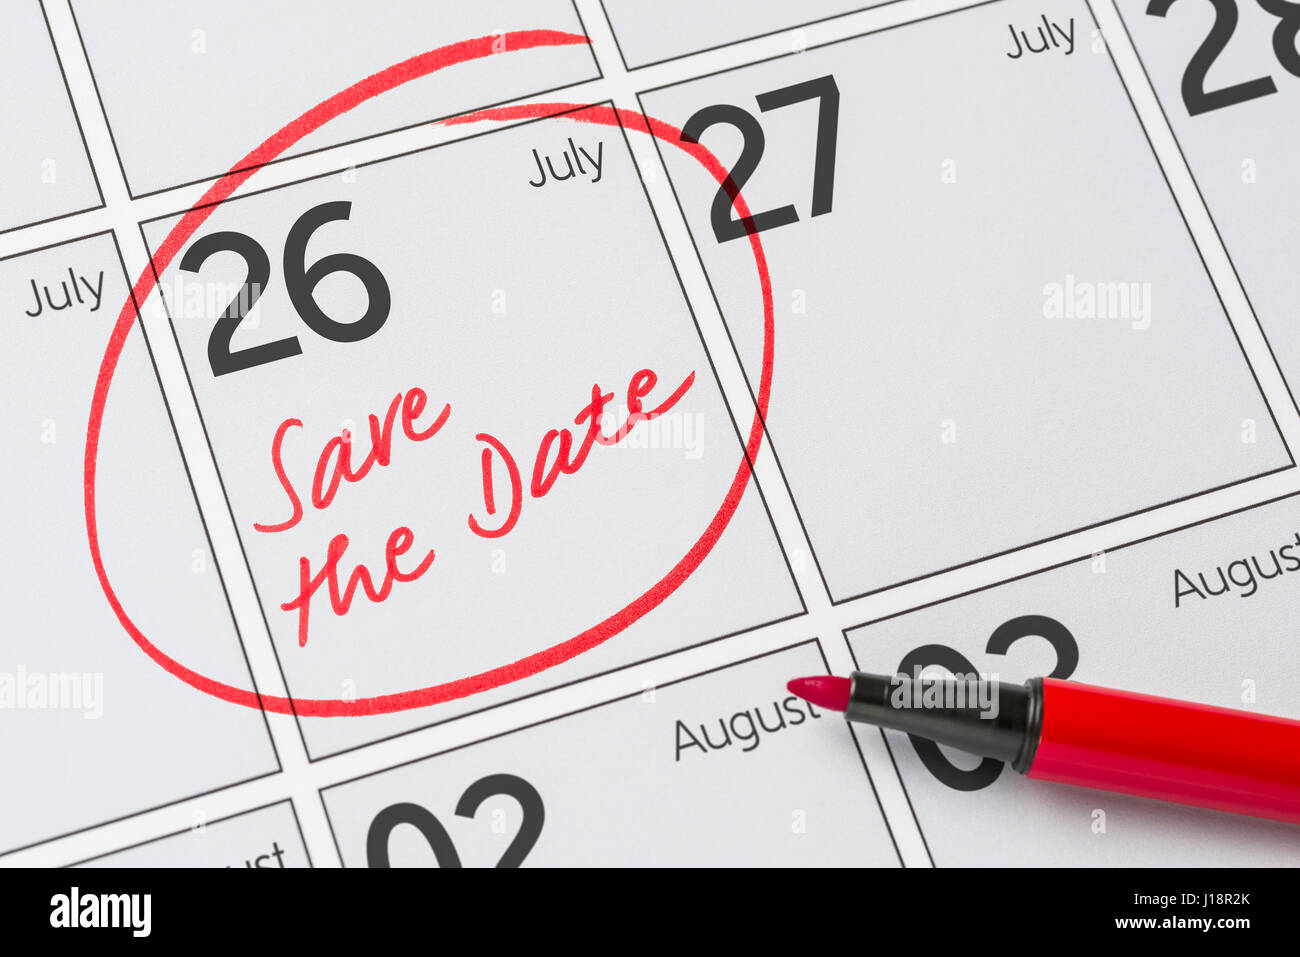 Enregistrer la date inscrite sur un calendrier - Juillet 26 Banque D'Images